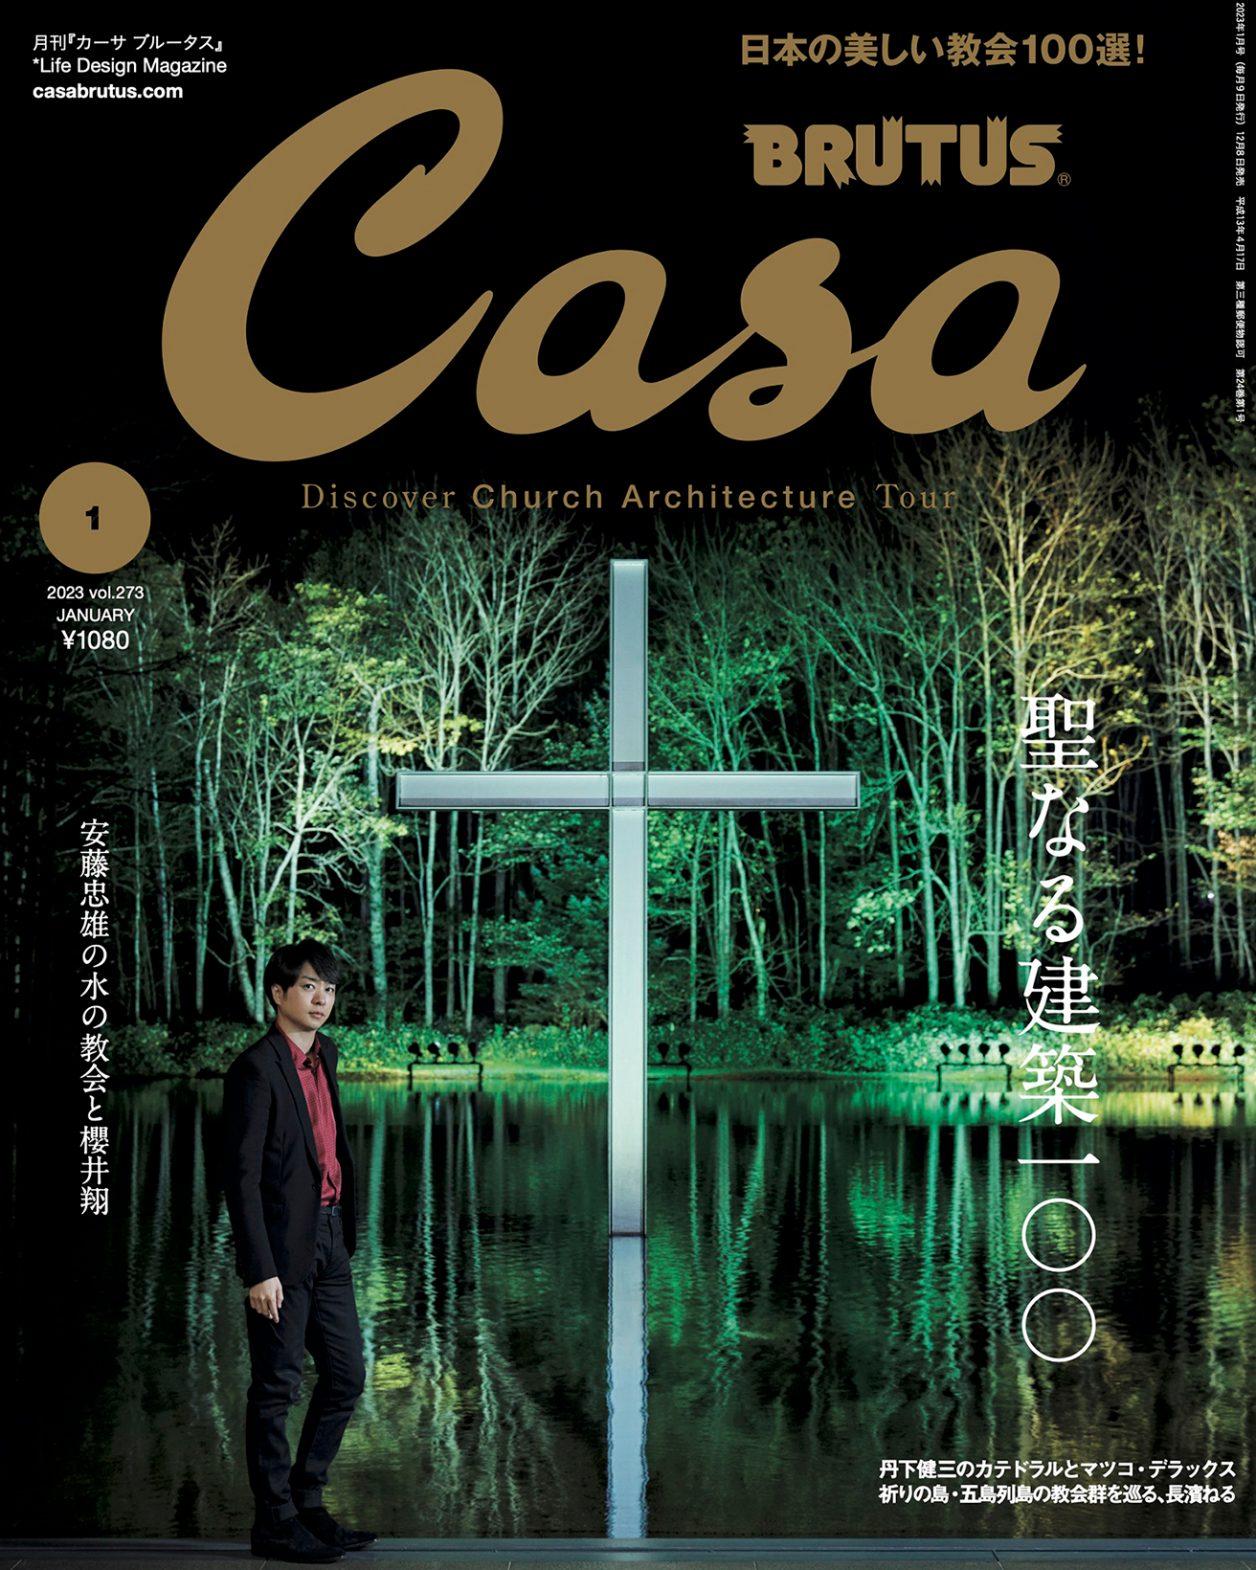 櫻井翔さんが安藤忠雄設計の水の教会へ。12月8日発売号『聖なる建築100』。